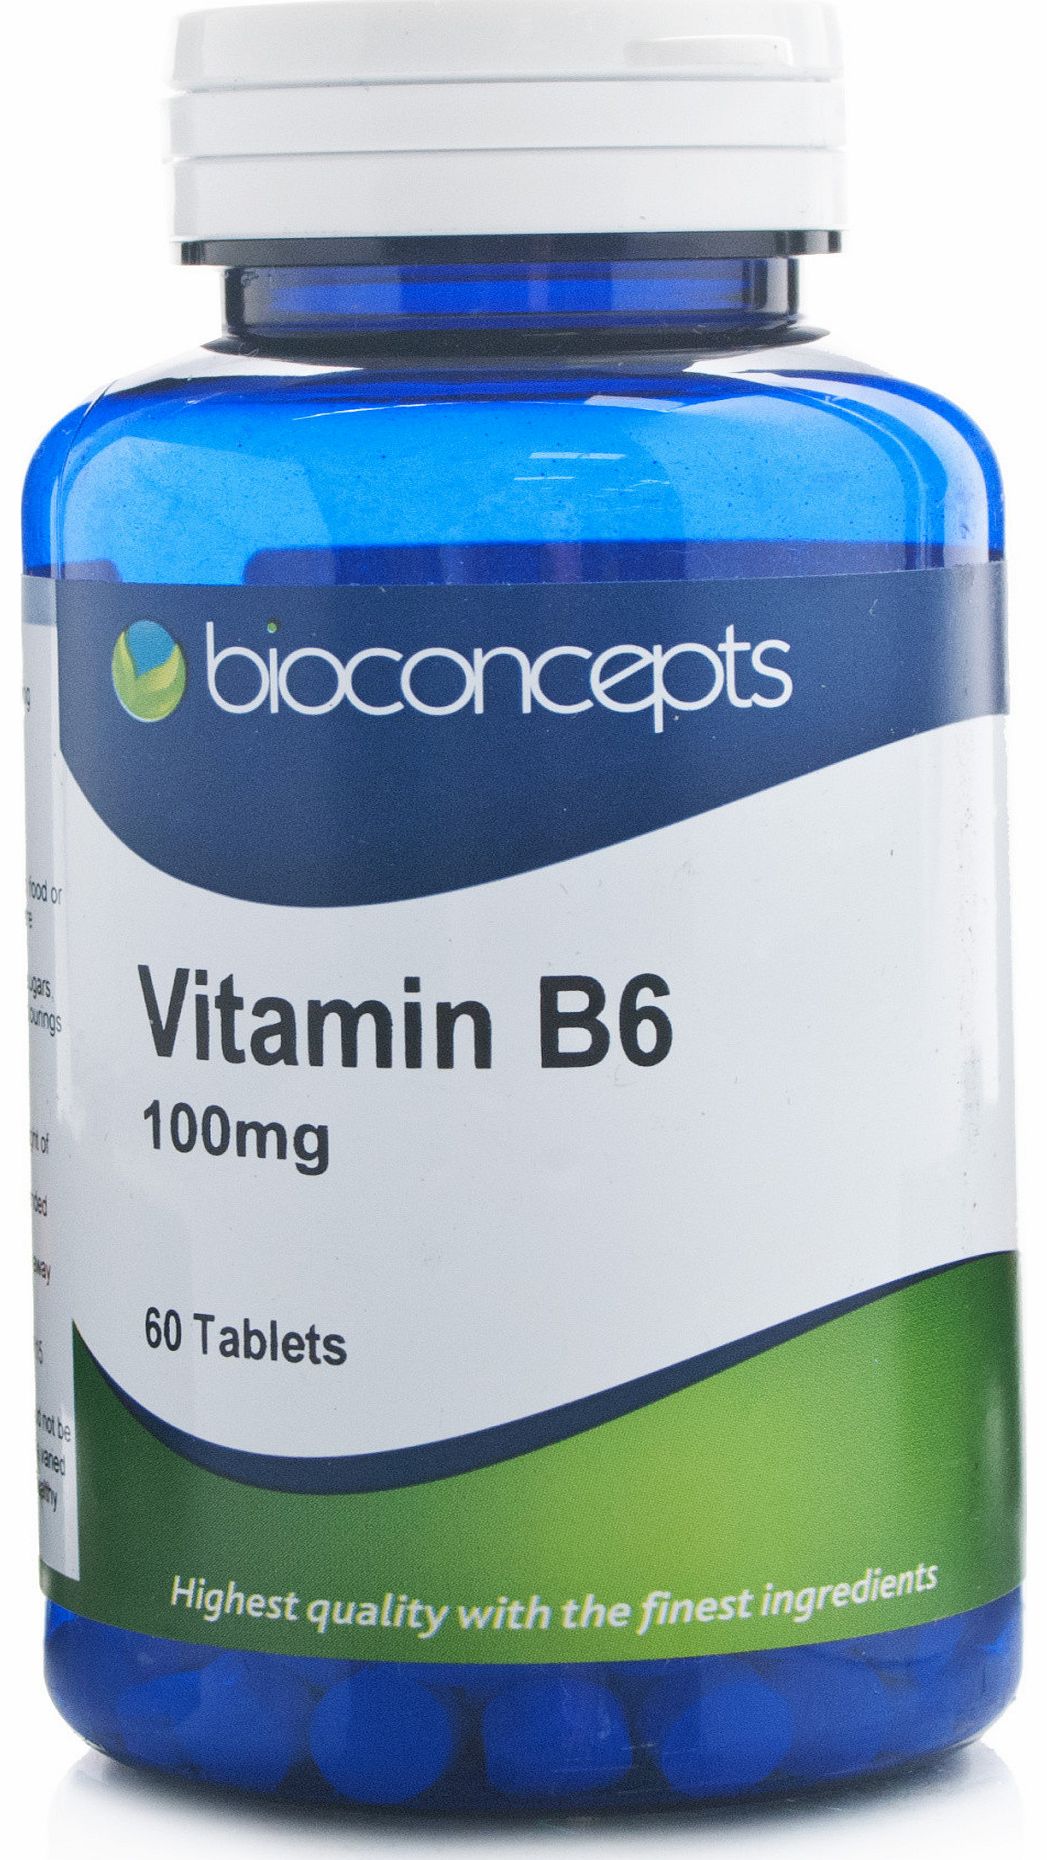 Bioconcepts Vitamin B6 100mg